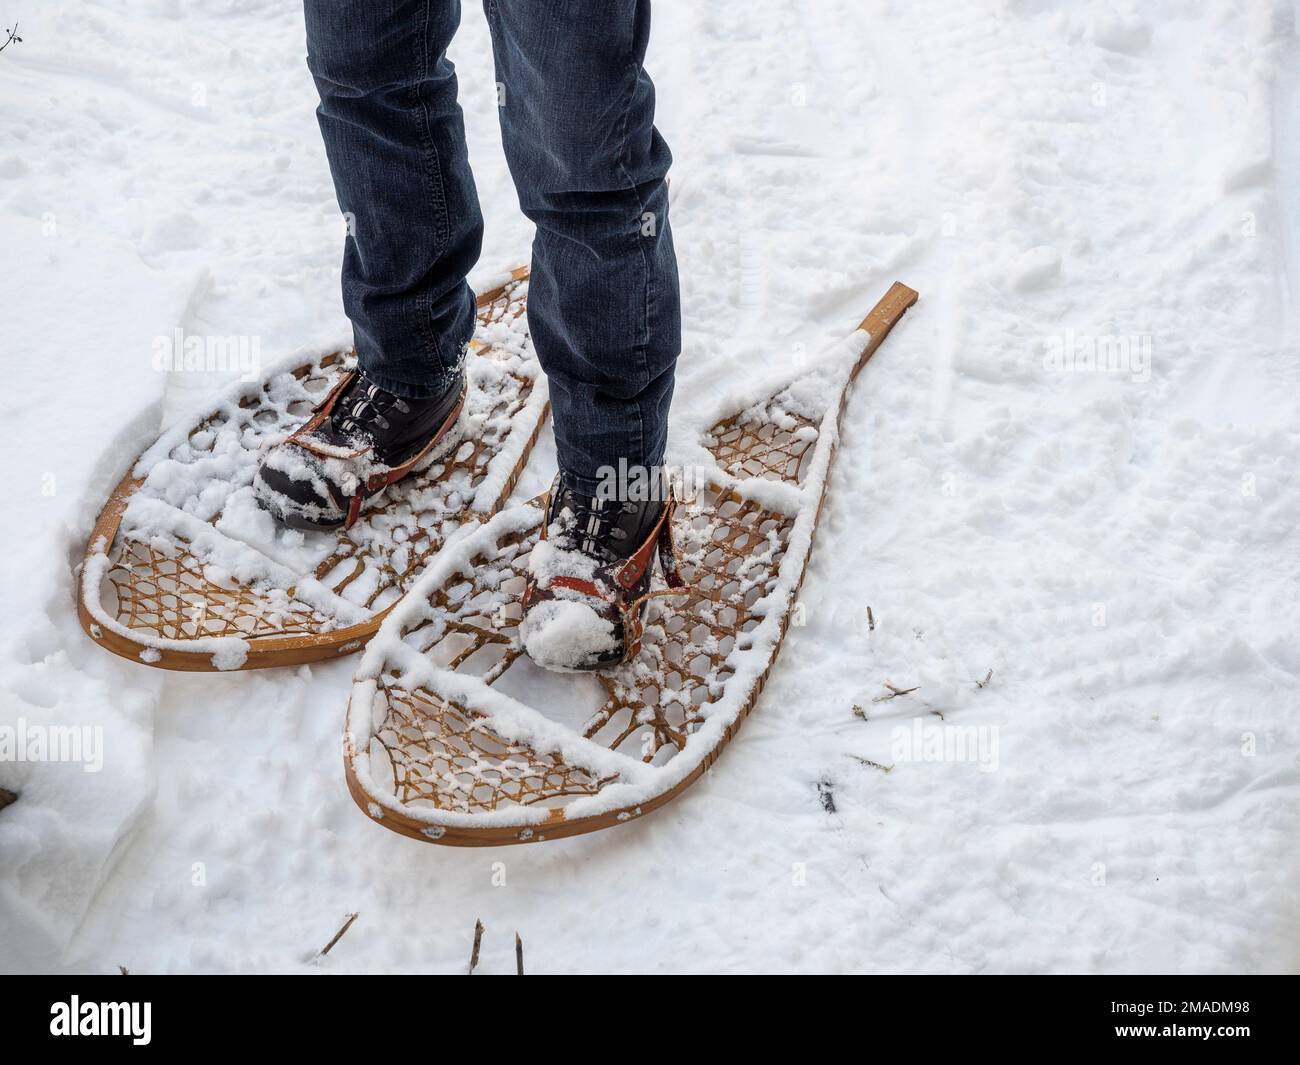 Auf Schneeschuhen: Ein jean-verkleideter Mann steht im Schnee auf einem Paar traditioneller Schneeschuhe, die an seine Stiefel geknickt sind. Stockfoto